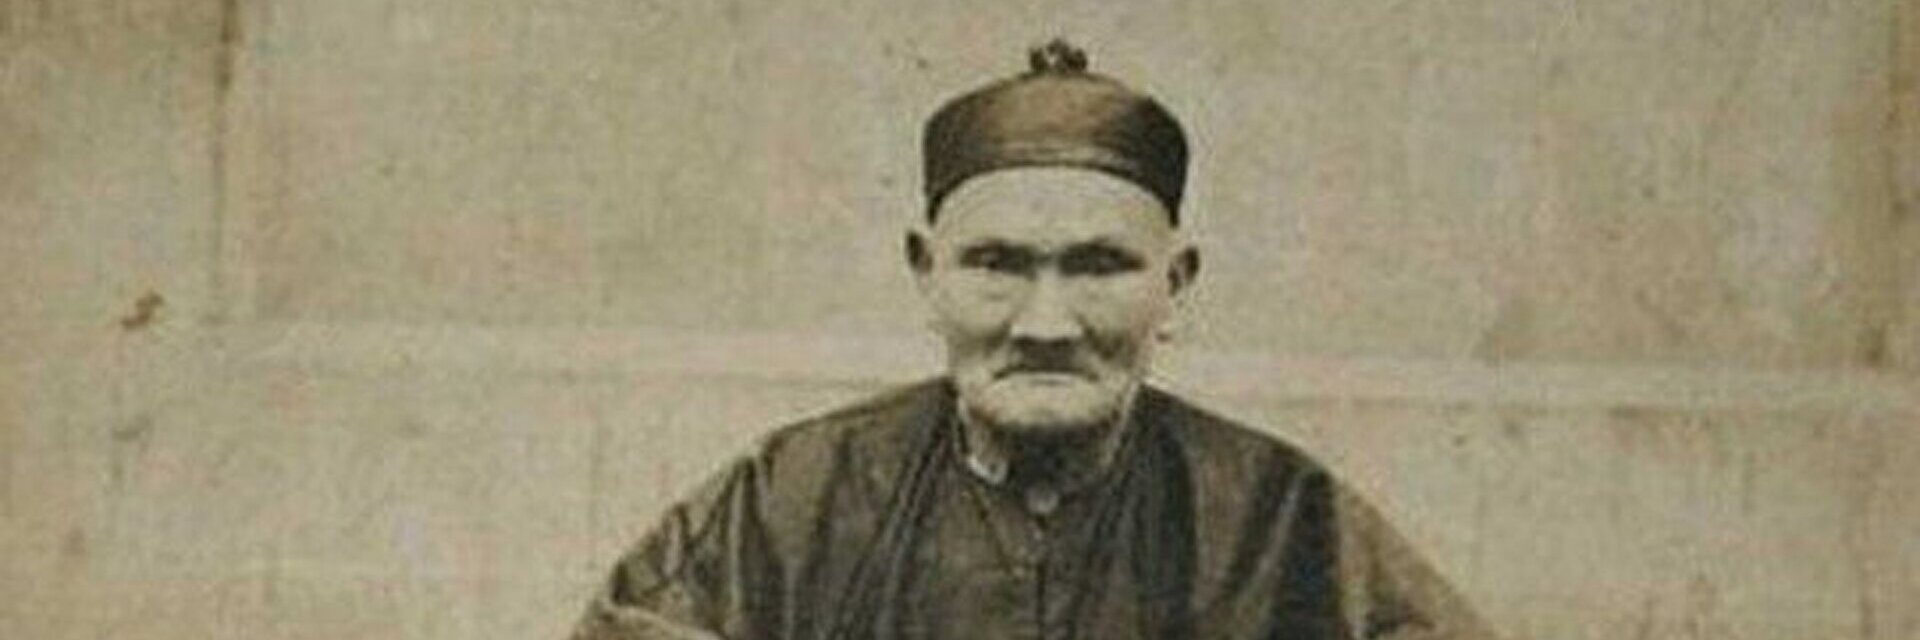 Люди жившие 300 лет. Ли Цинъюнь (1677—1933). Ли Цинъюнь долгожитель. Ли Чинг-Юн долгожитель. Ли Цинъюнь 256 лет.